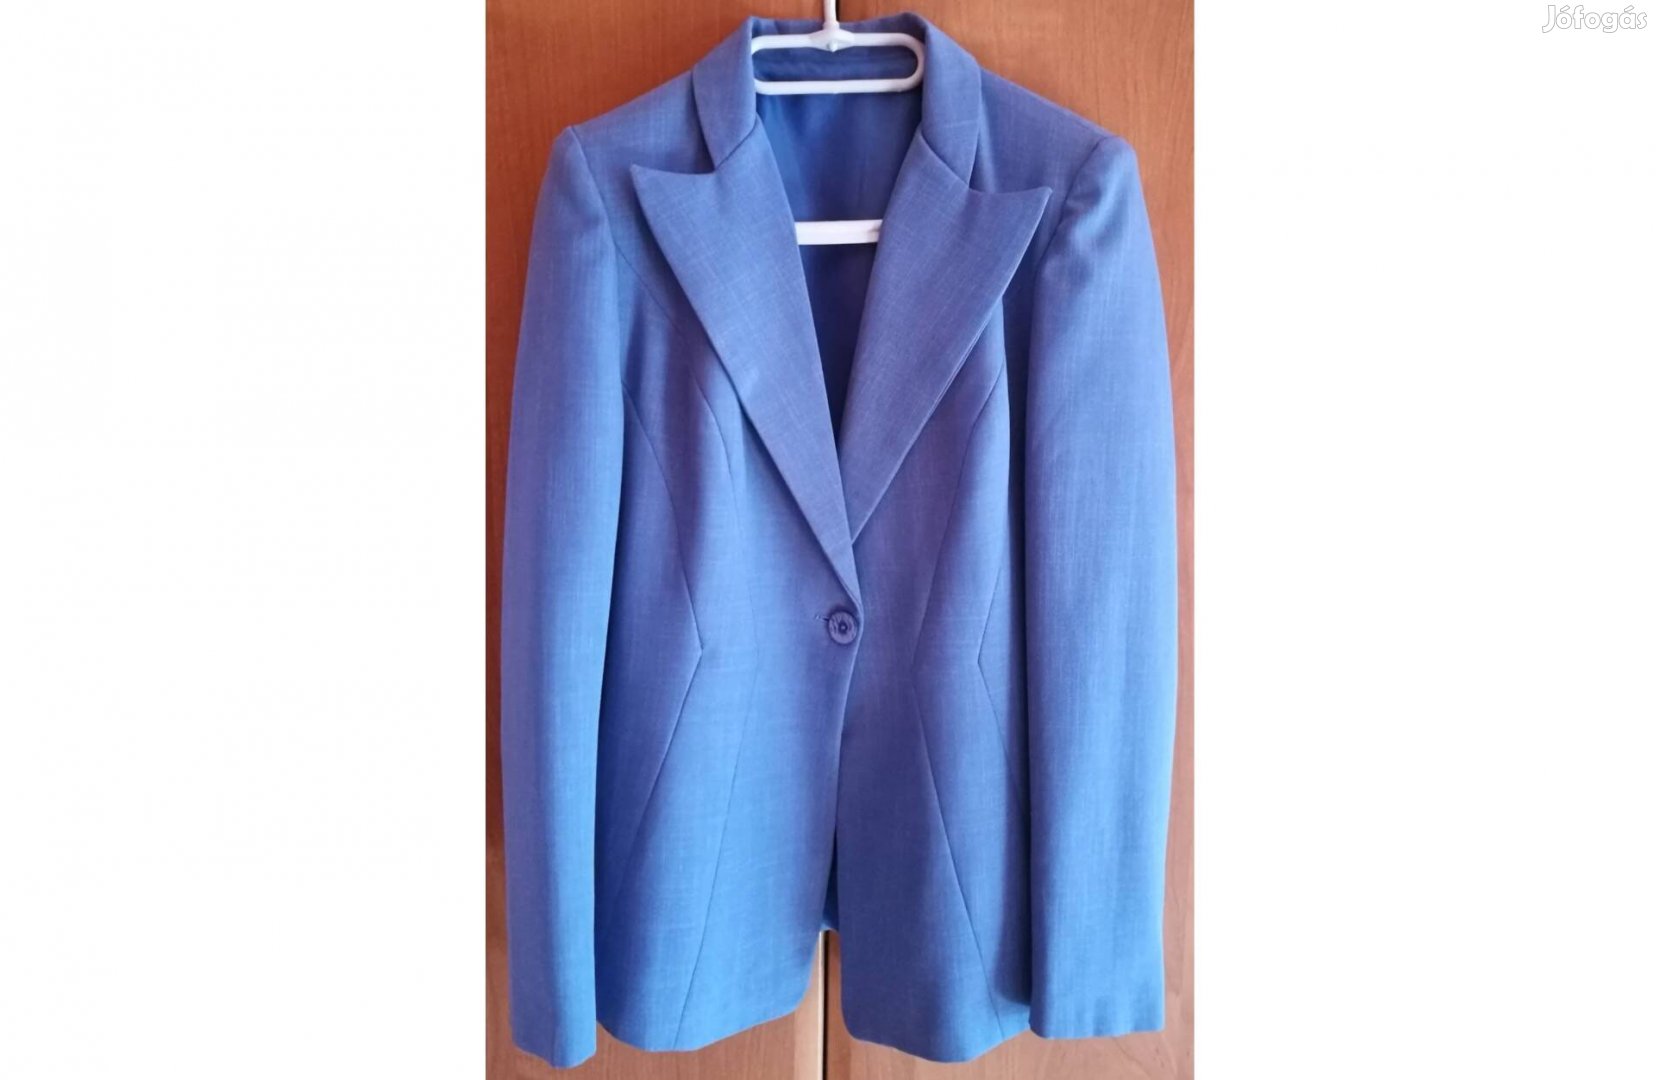 Kék színű női kosztümök (kabát, nadrág)